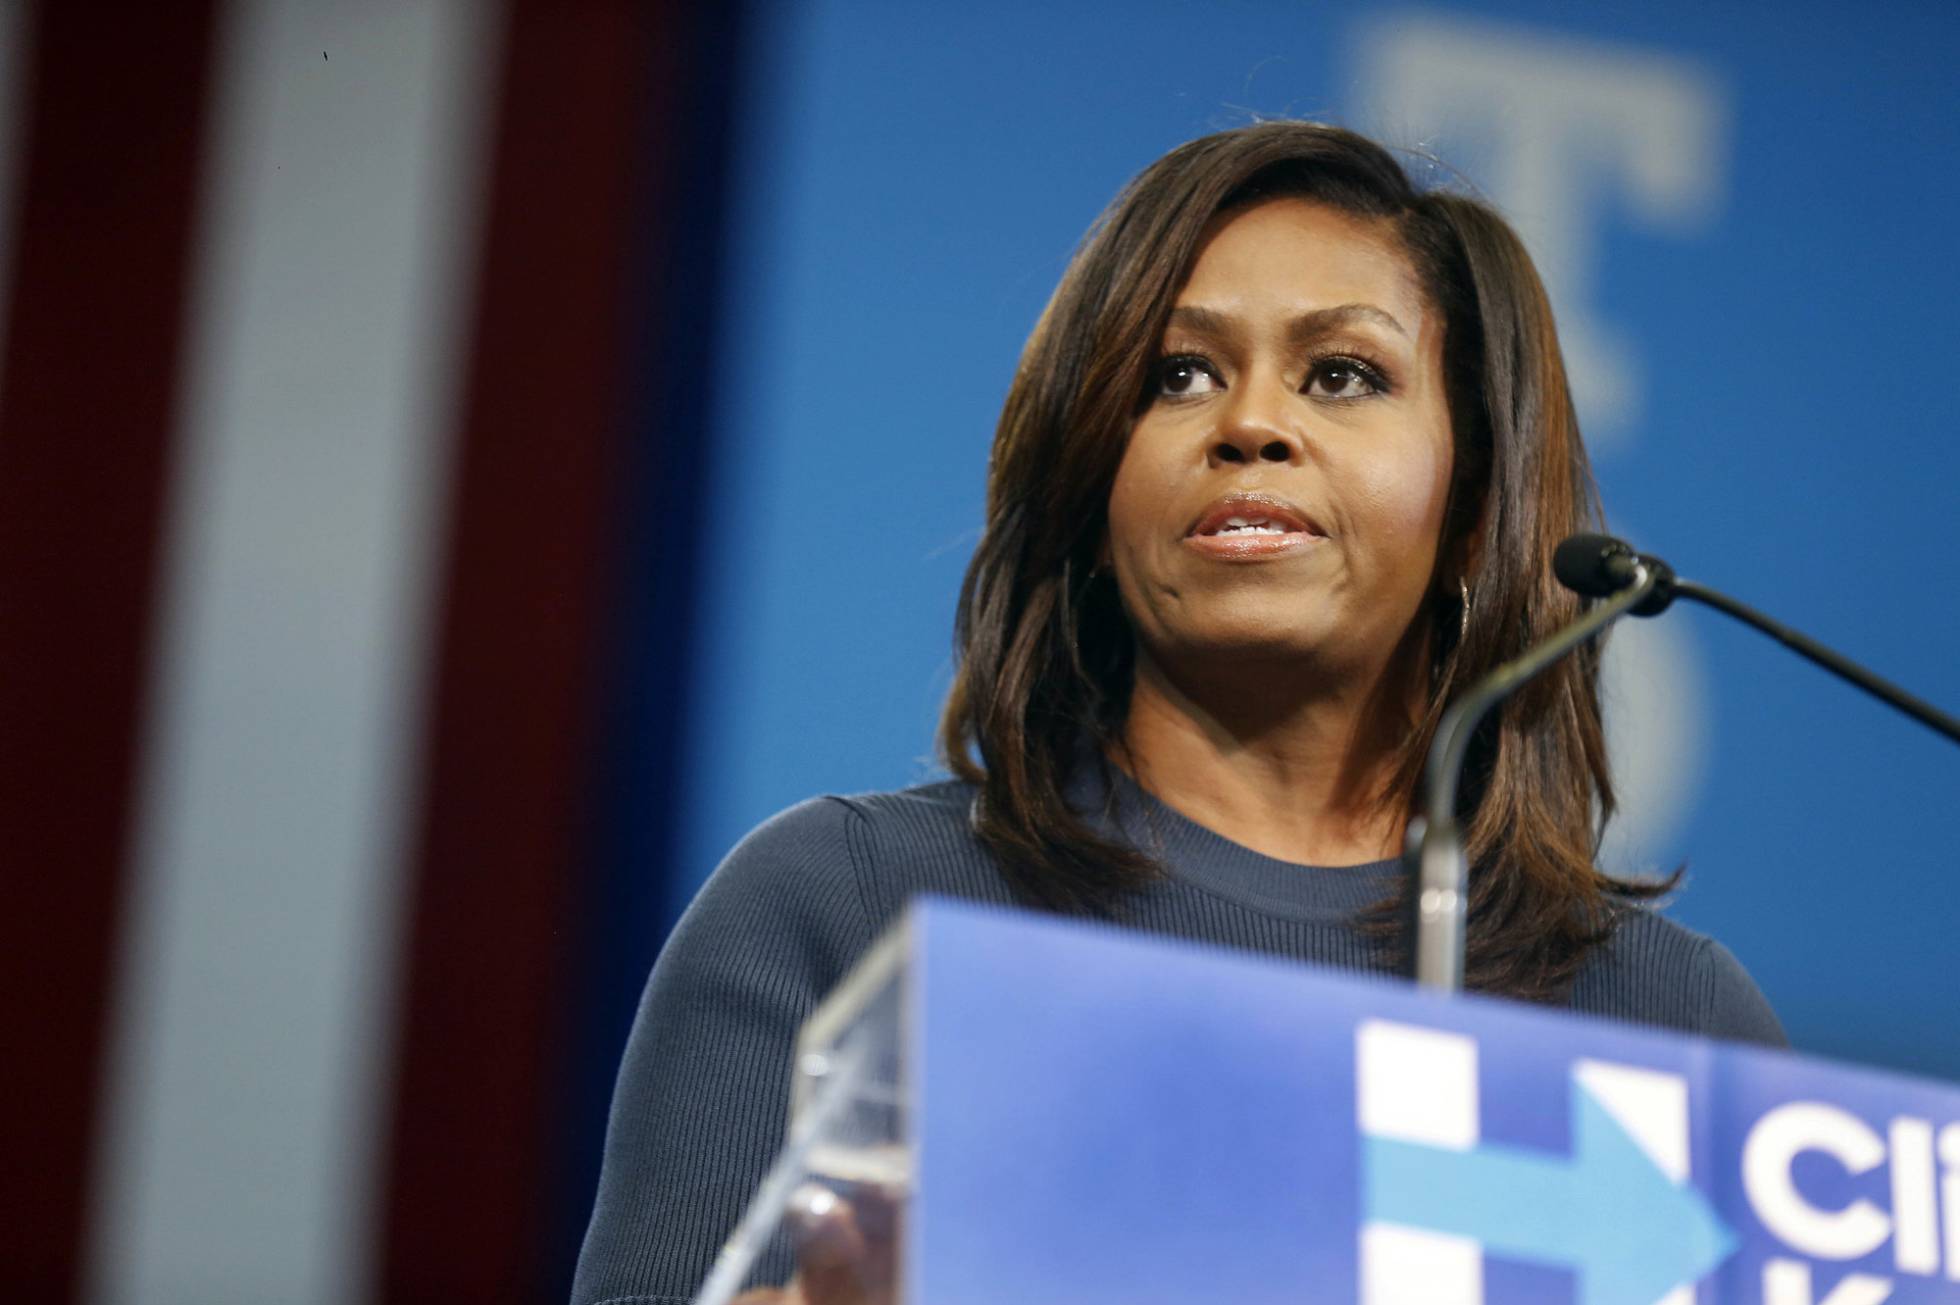 Michelle Obama urge a decir “basta” a Trump por “intolerable” trato a mujeres